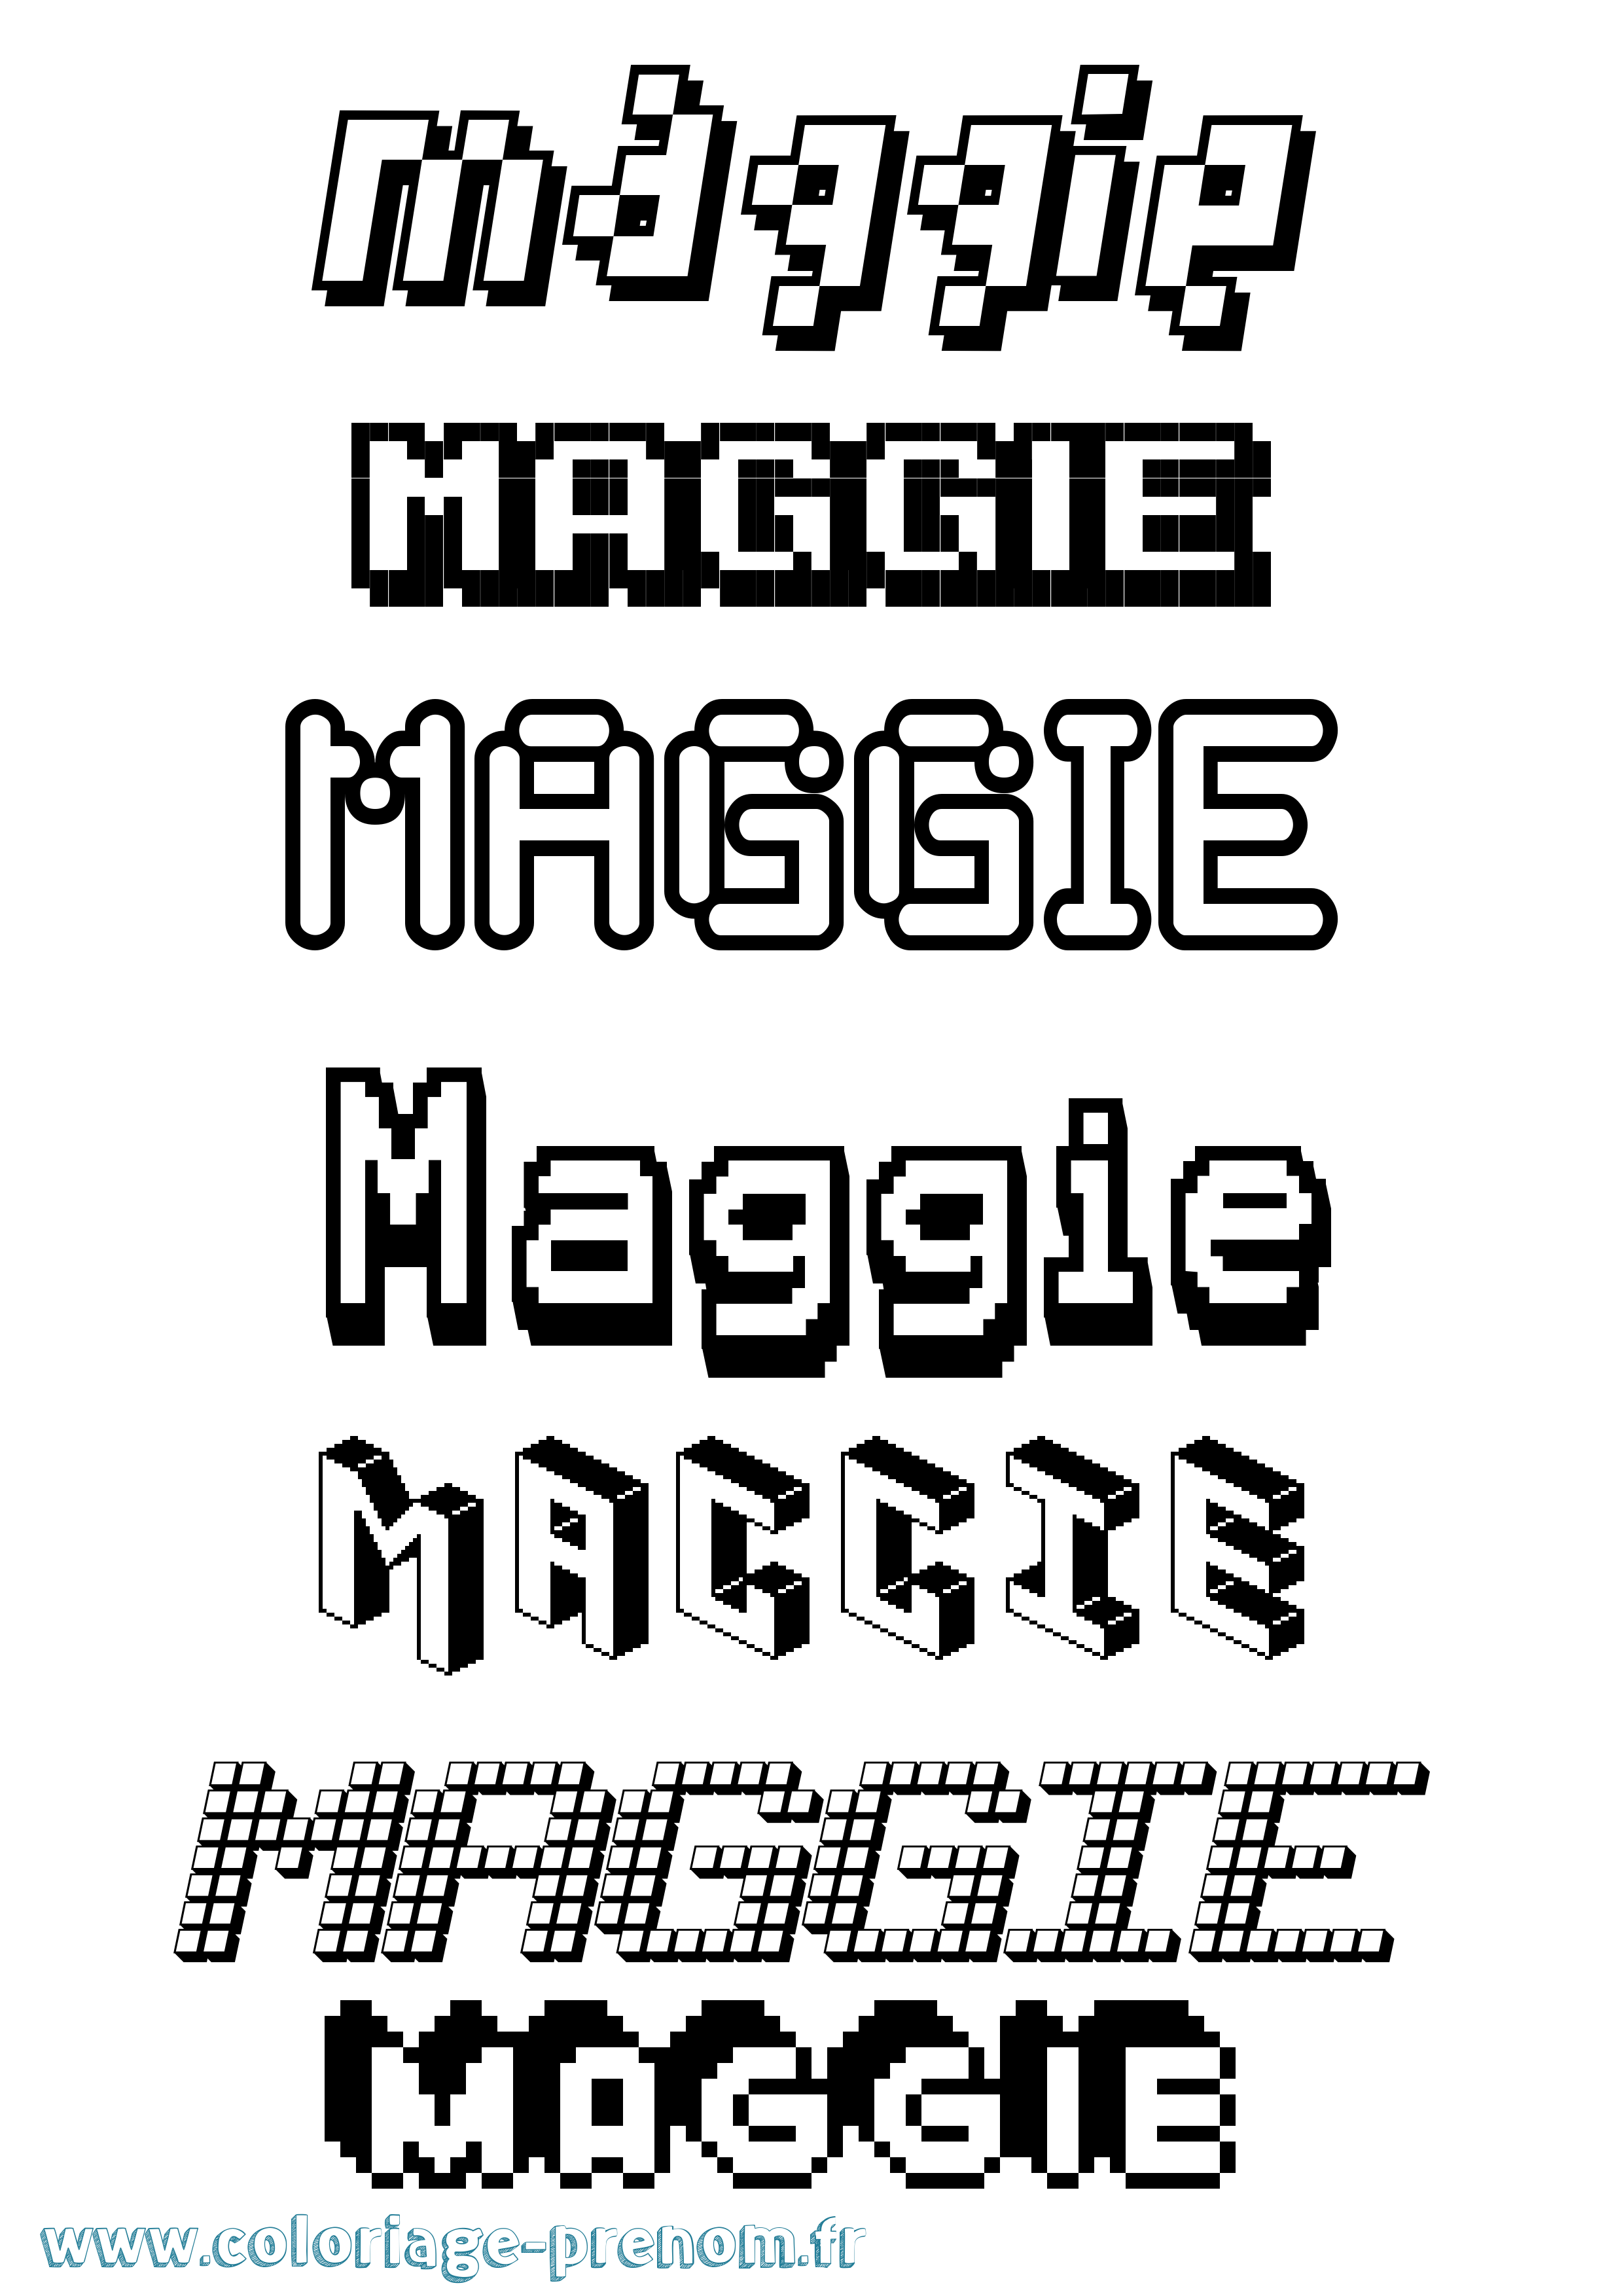 Coloriage prénom Maggie Pixel